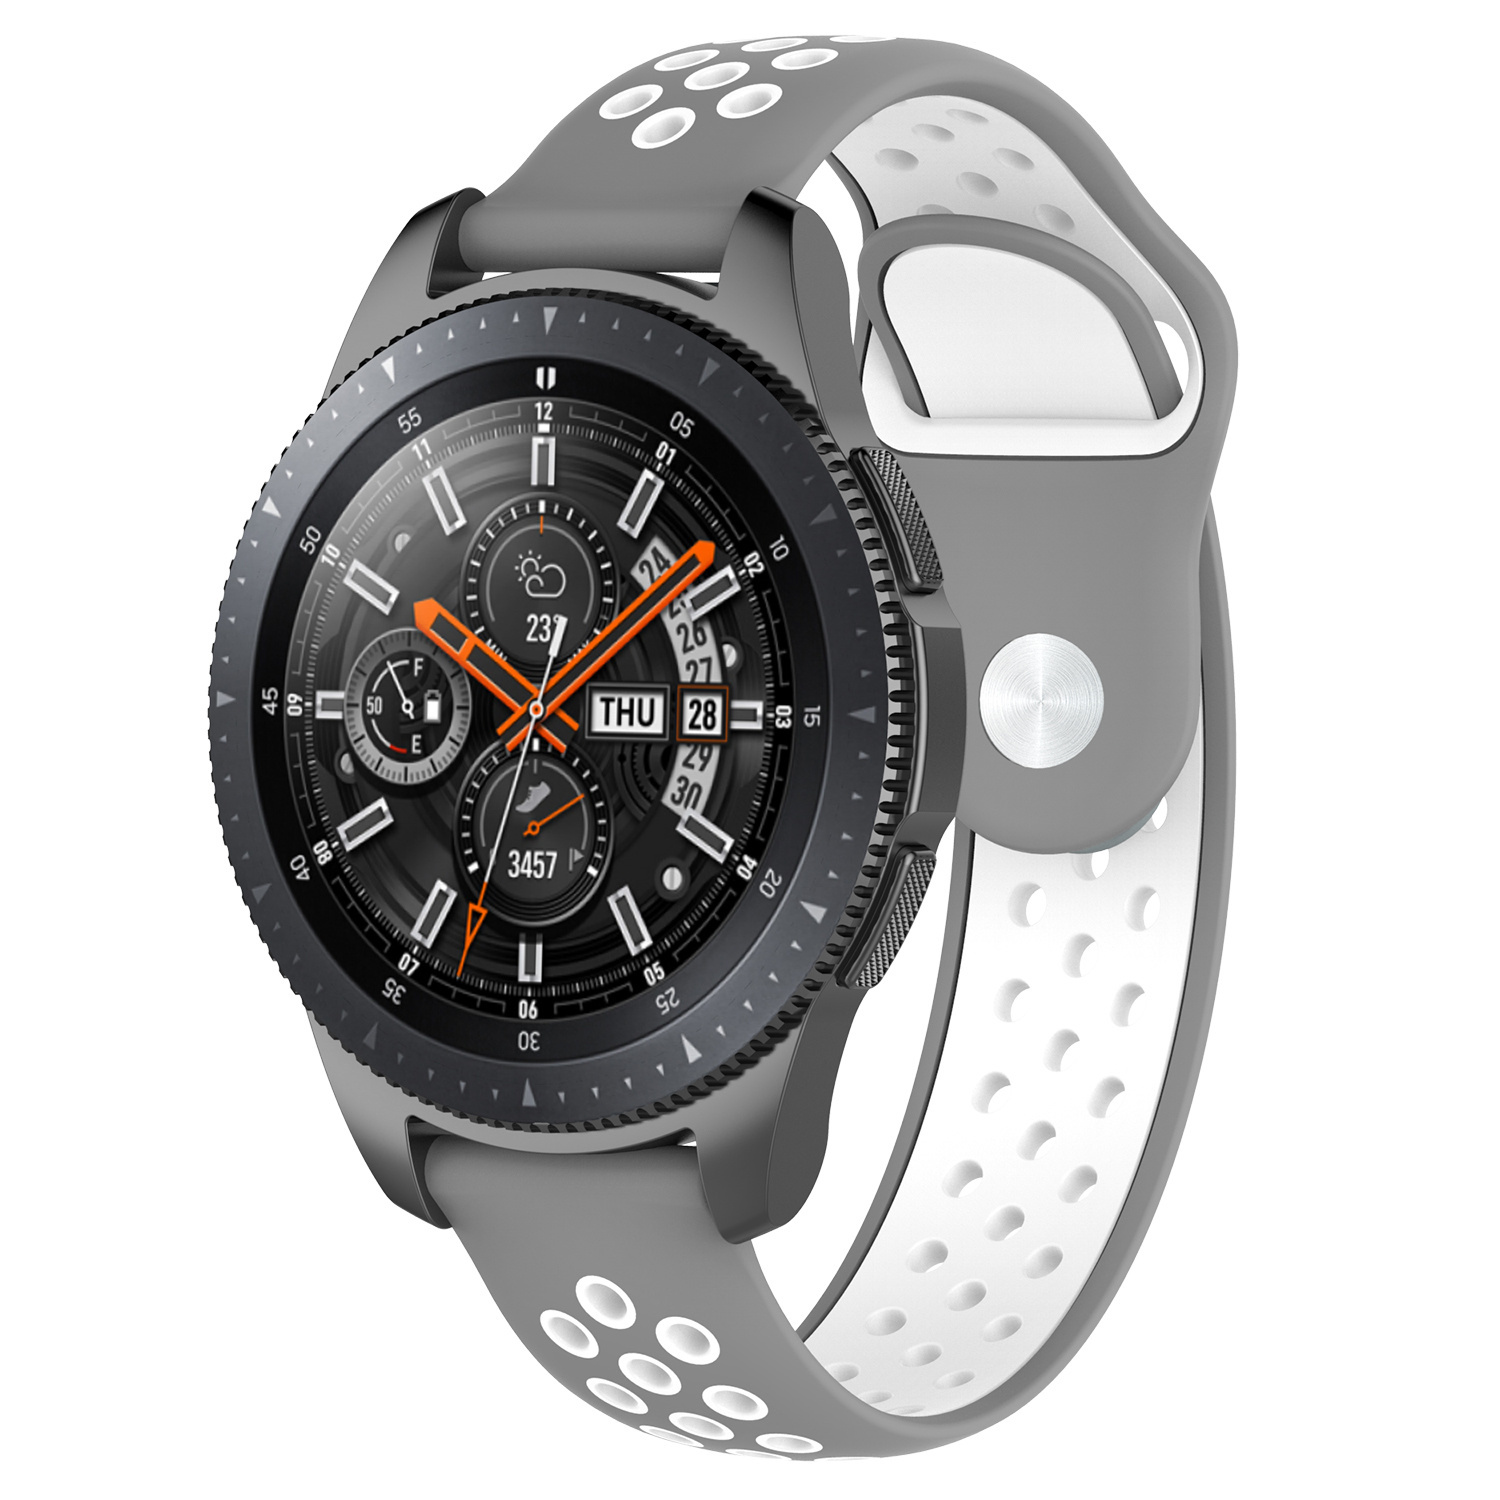 Correa deportiva doble para el Samsung Galaxy Watch - gris blanco